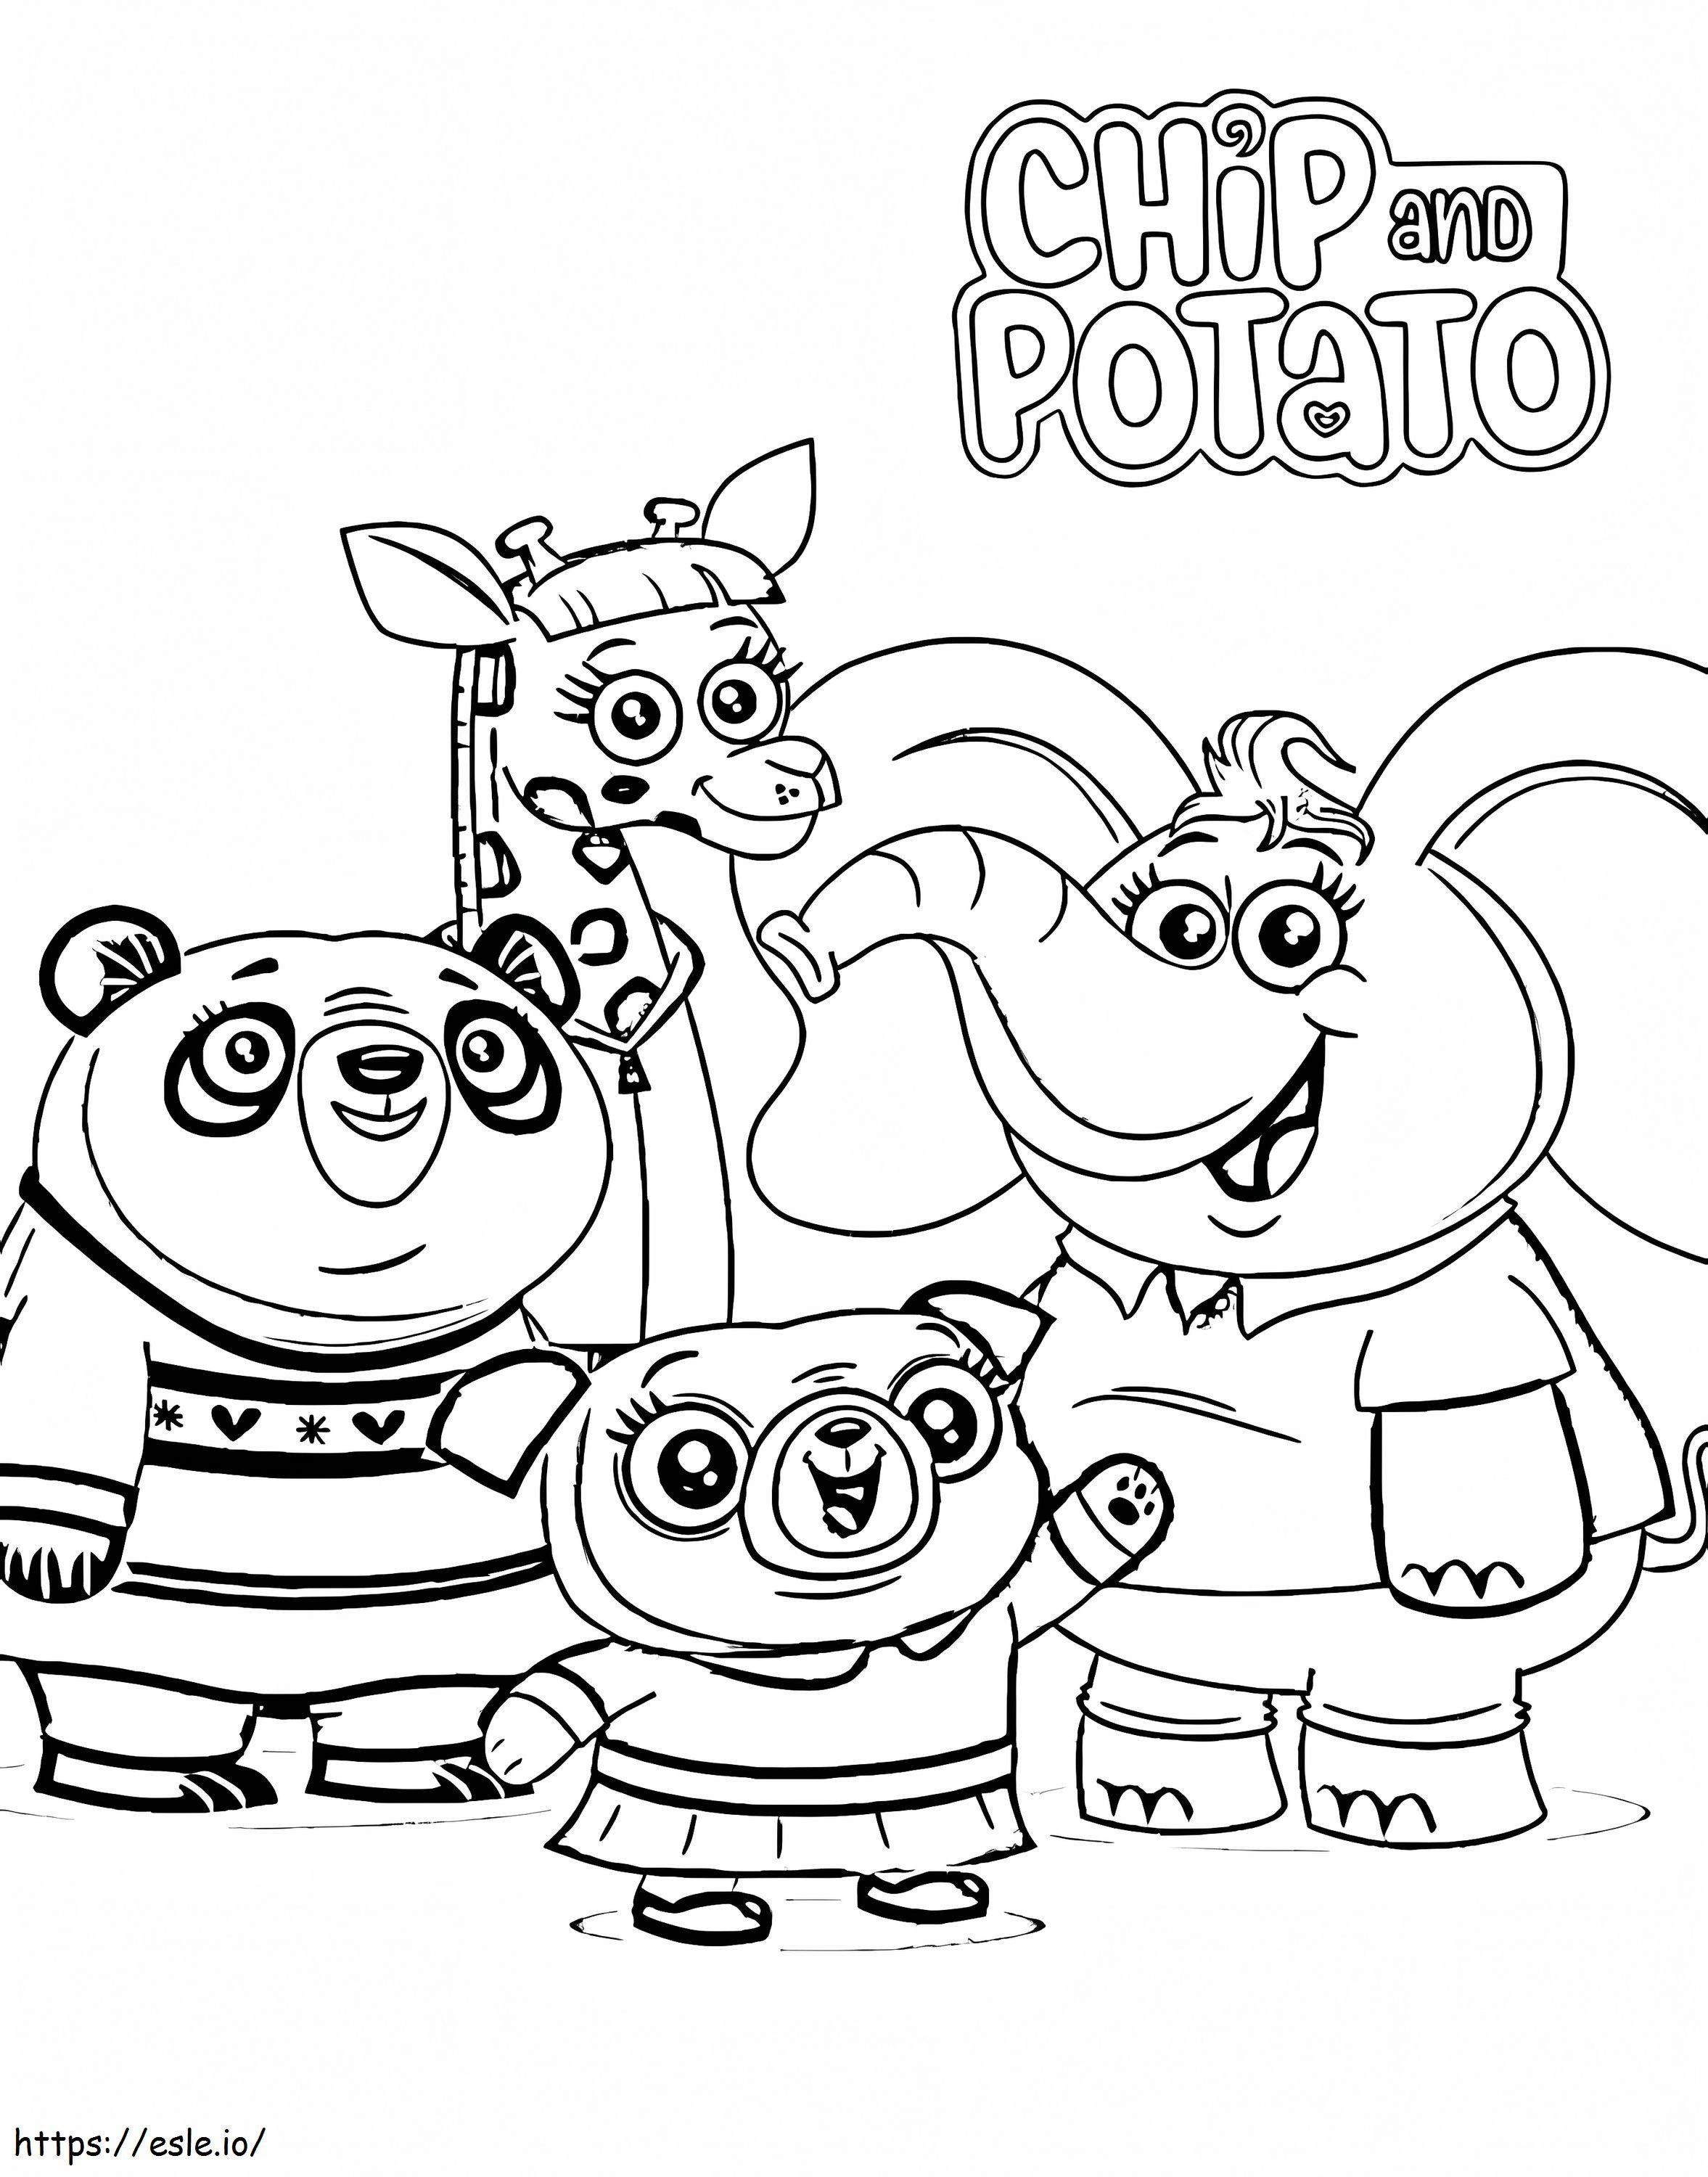 Coloriage Personnages de Chip And Potato à imprimer dessin